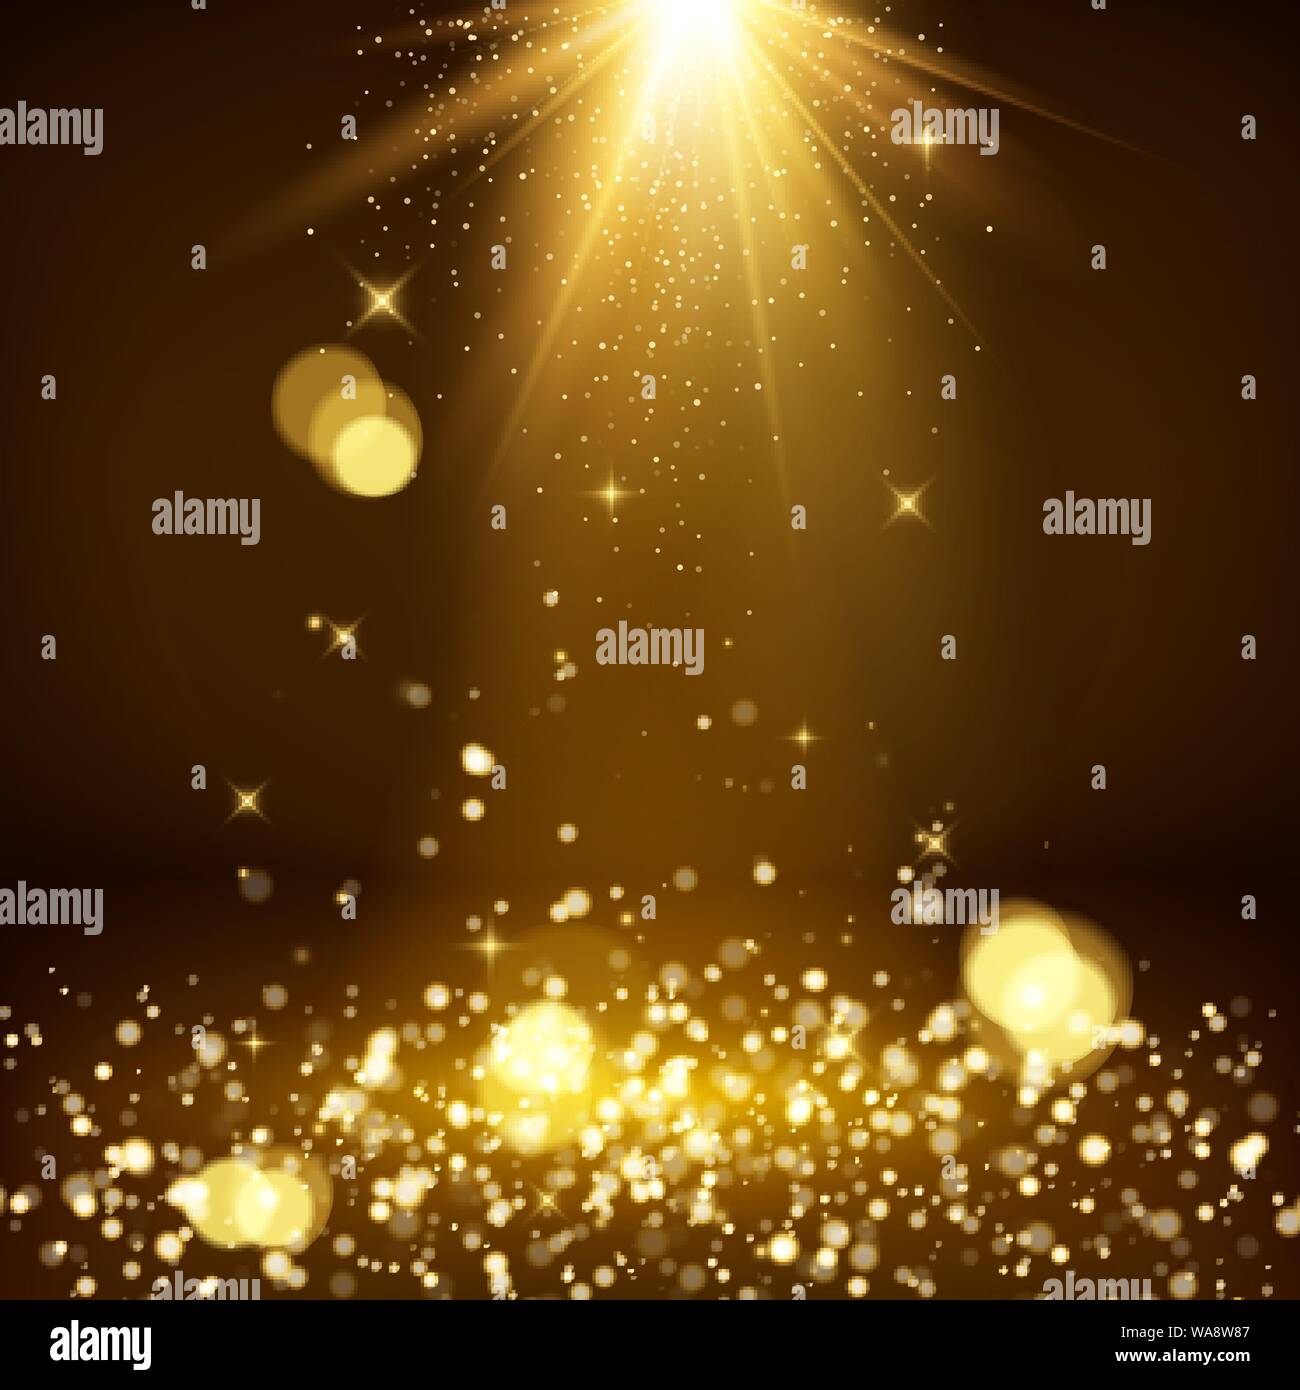 Light rays and golden falling glittering dust. Magic background. Shiny spotlight or scene. Blurred lights bokeh. Vector illustration Stock Vector